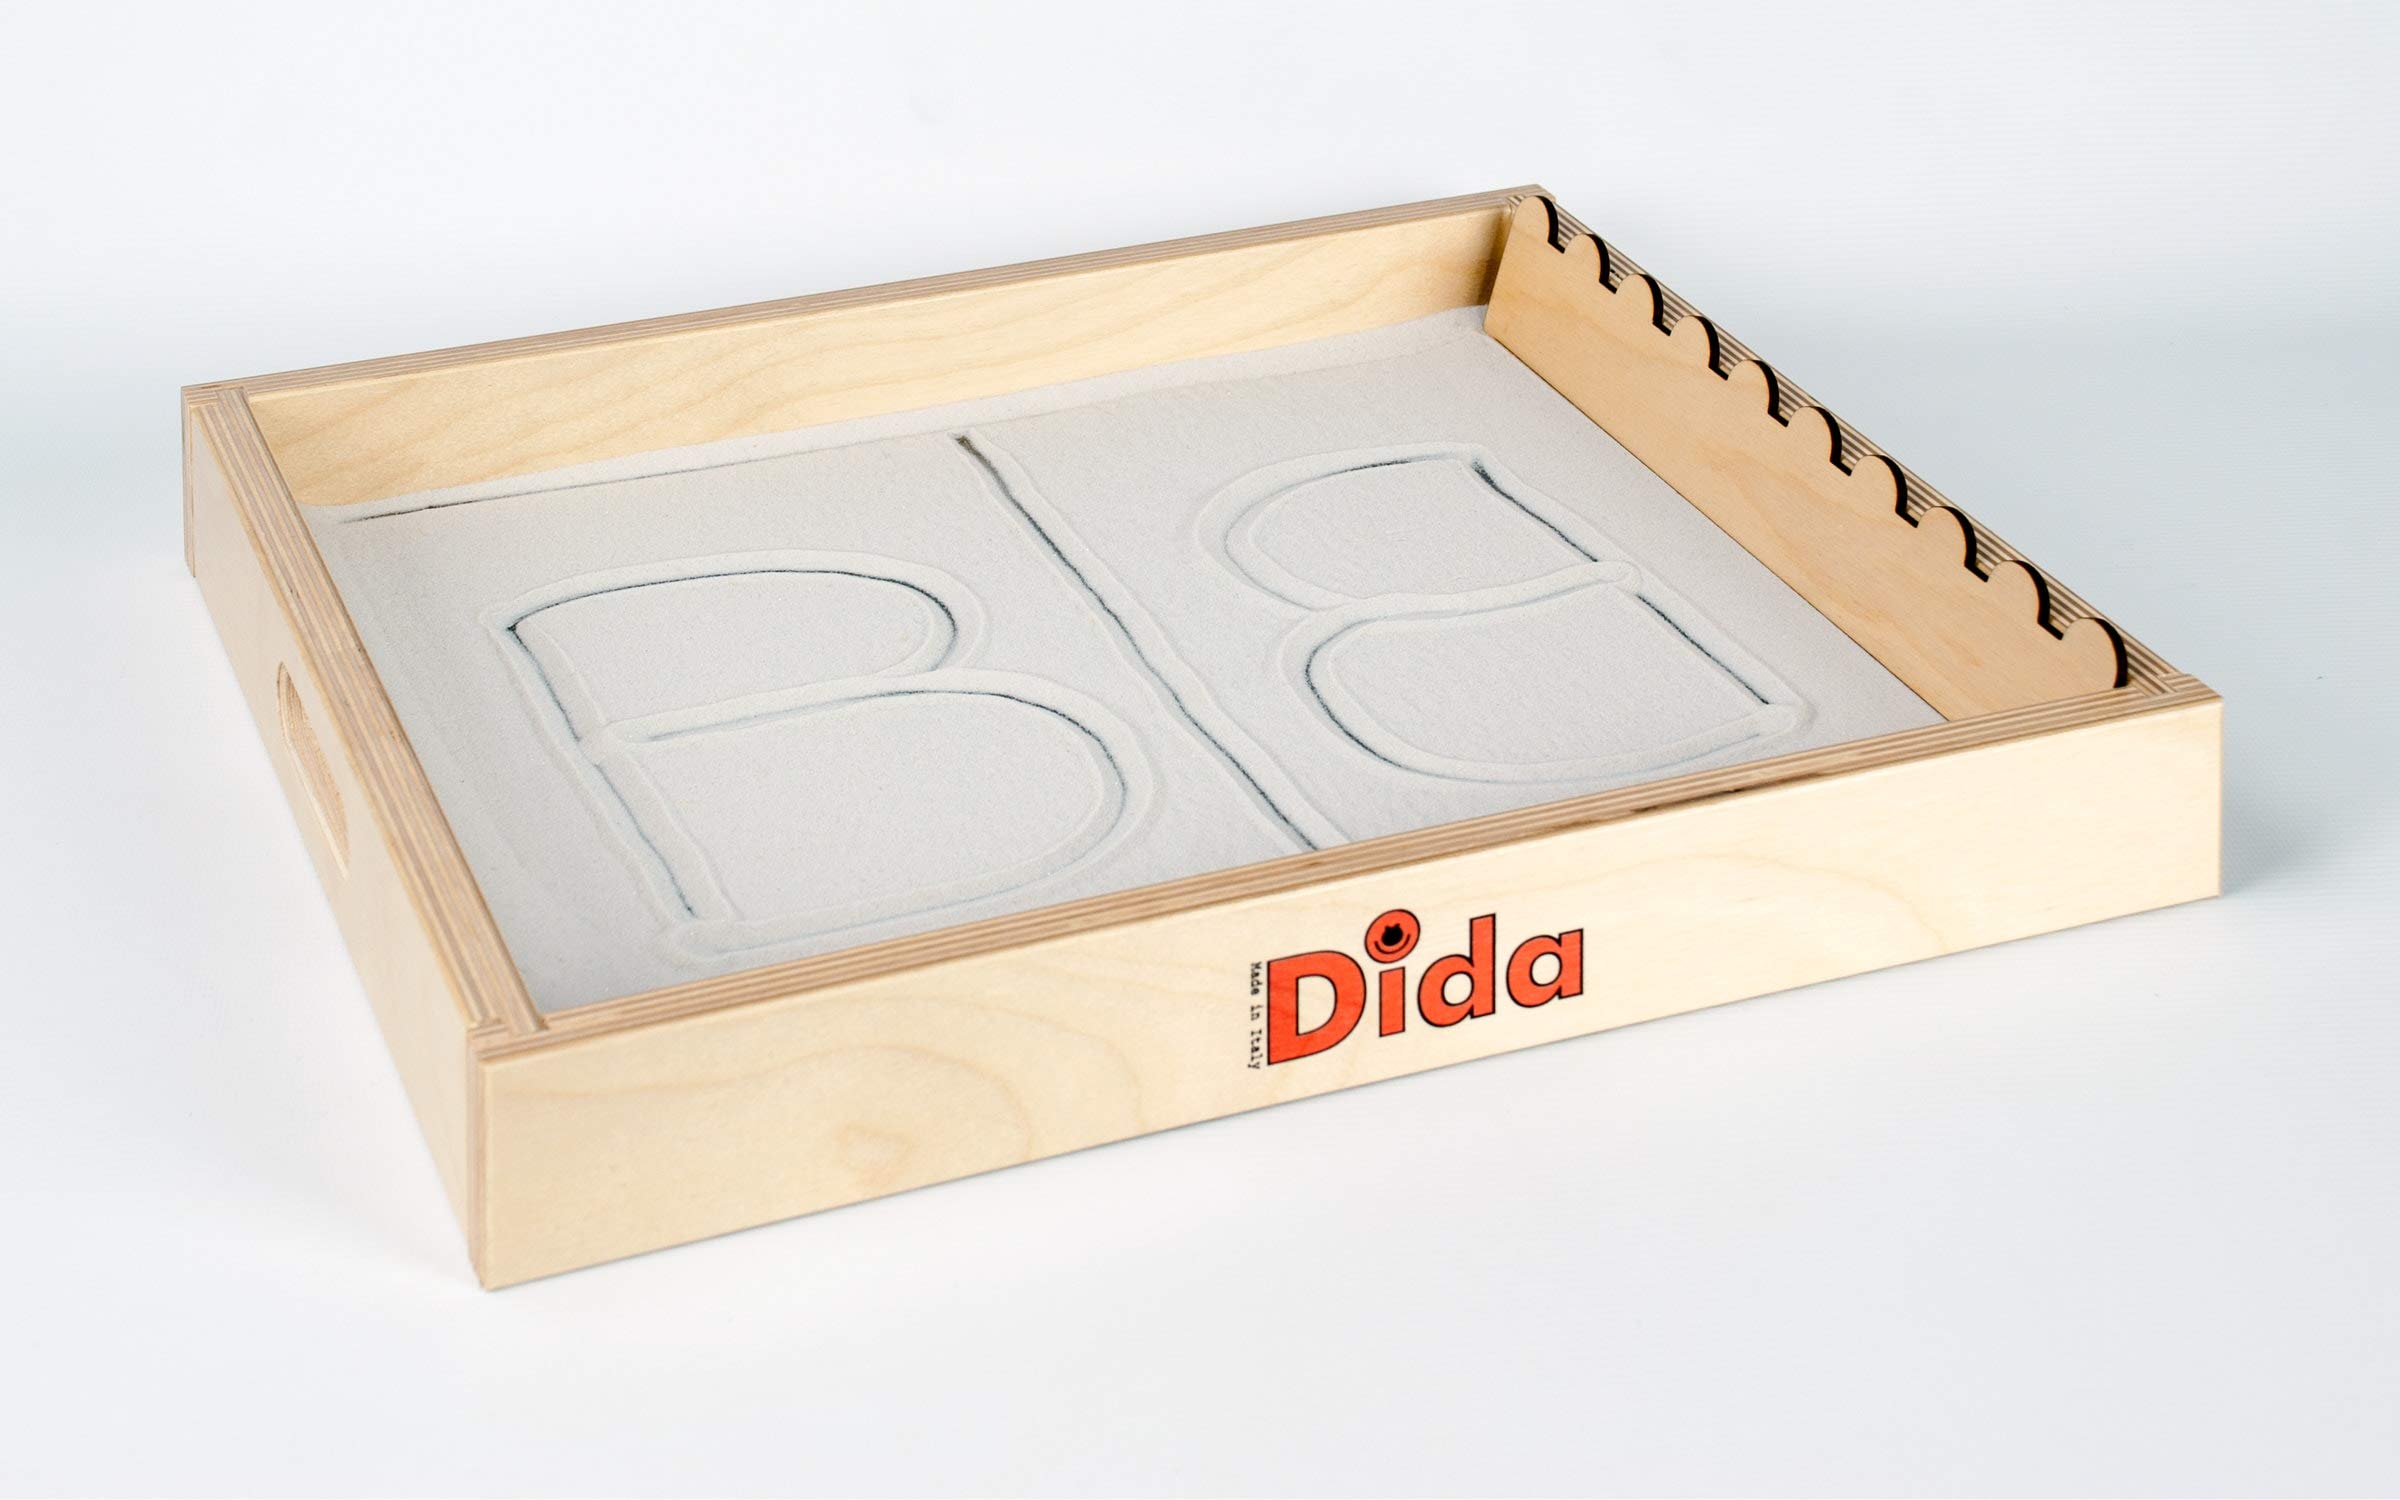 Dida - Ein Sandtablett, In 2 Größen Erhältlich; Zum Lesen, Malen Und Sandschreiben - Ein Didaktisches Spiel, Methode Montessori